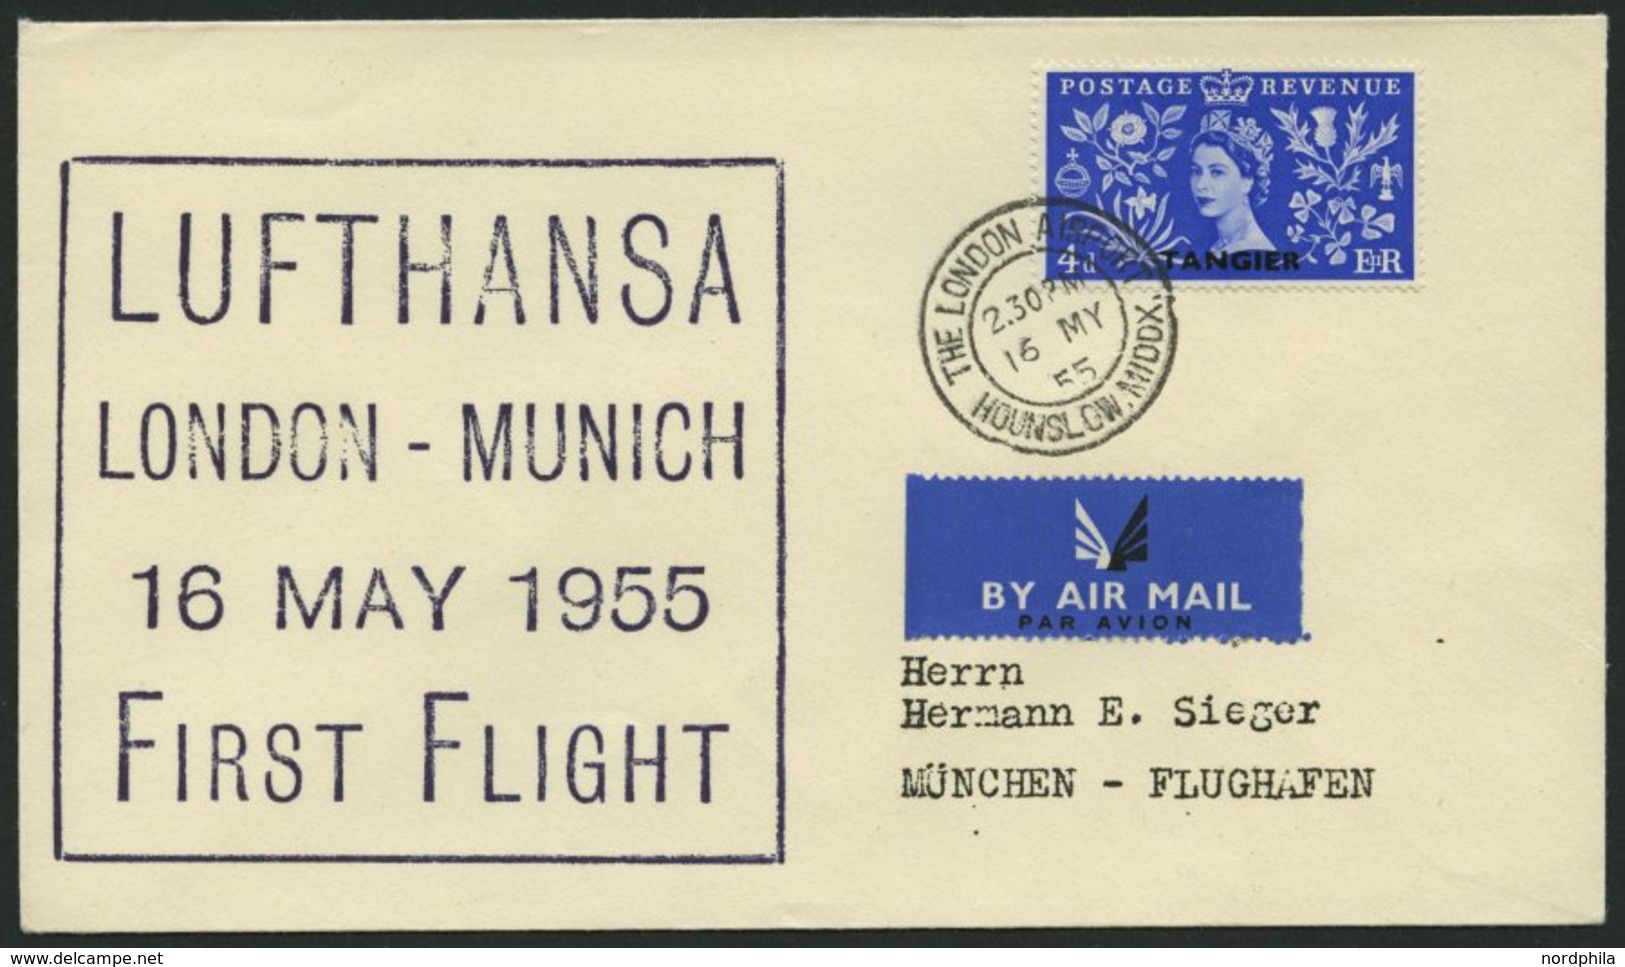 DEUTSCHE LUFTHANSA 29 BRIEF, 16.5.1955, London-München, Schwarz-violetter Stempel, R!, Frankiert Mit Brit.Post In Tanger - Usados